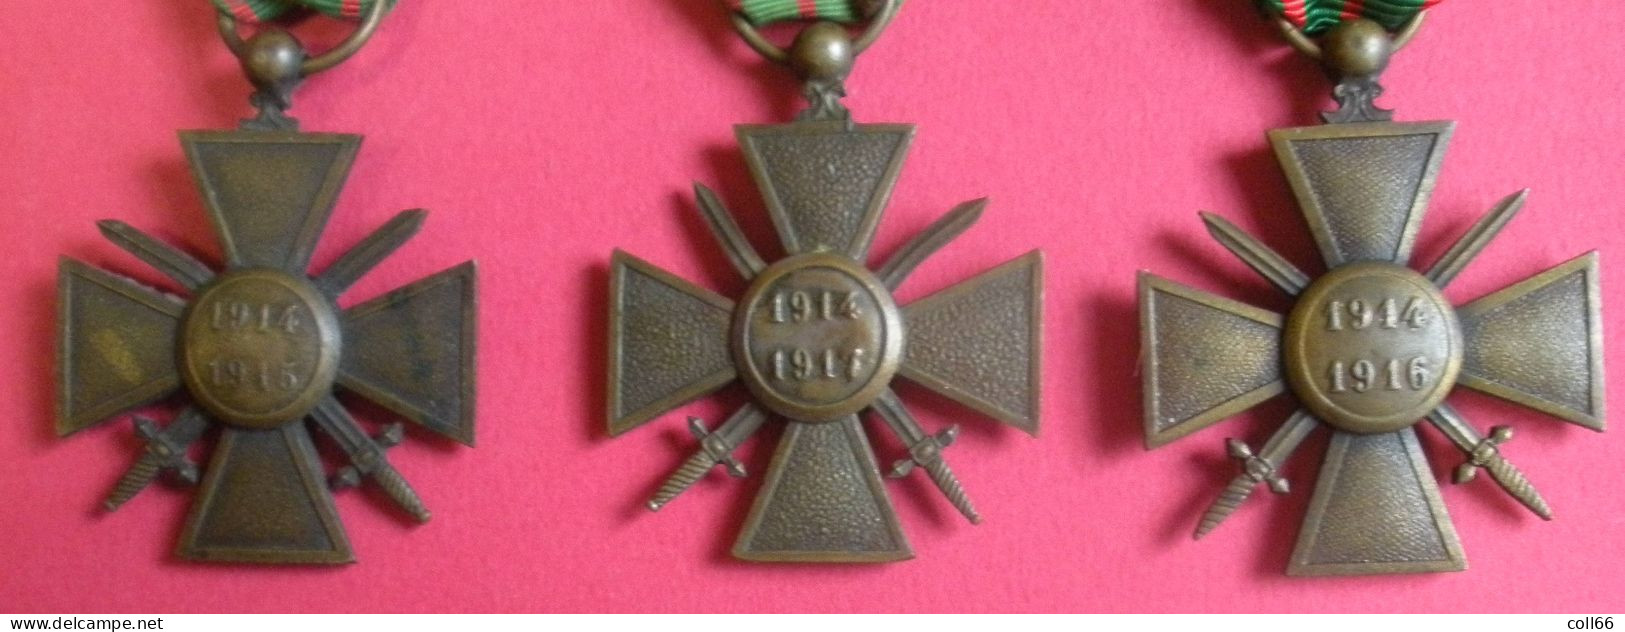 Ww1 Décorations Médailles 3 Croix De Guerre Avec Distinctions De Poilus 1914-1915 1914-1916 1914-1917 & Rubans - Frankrijk